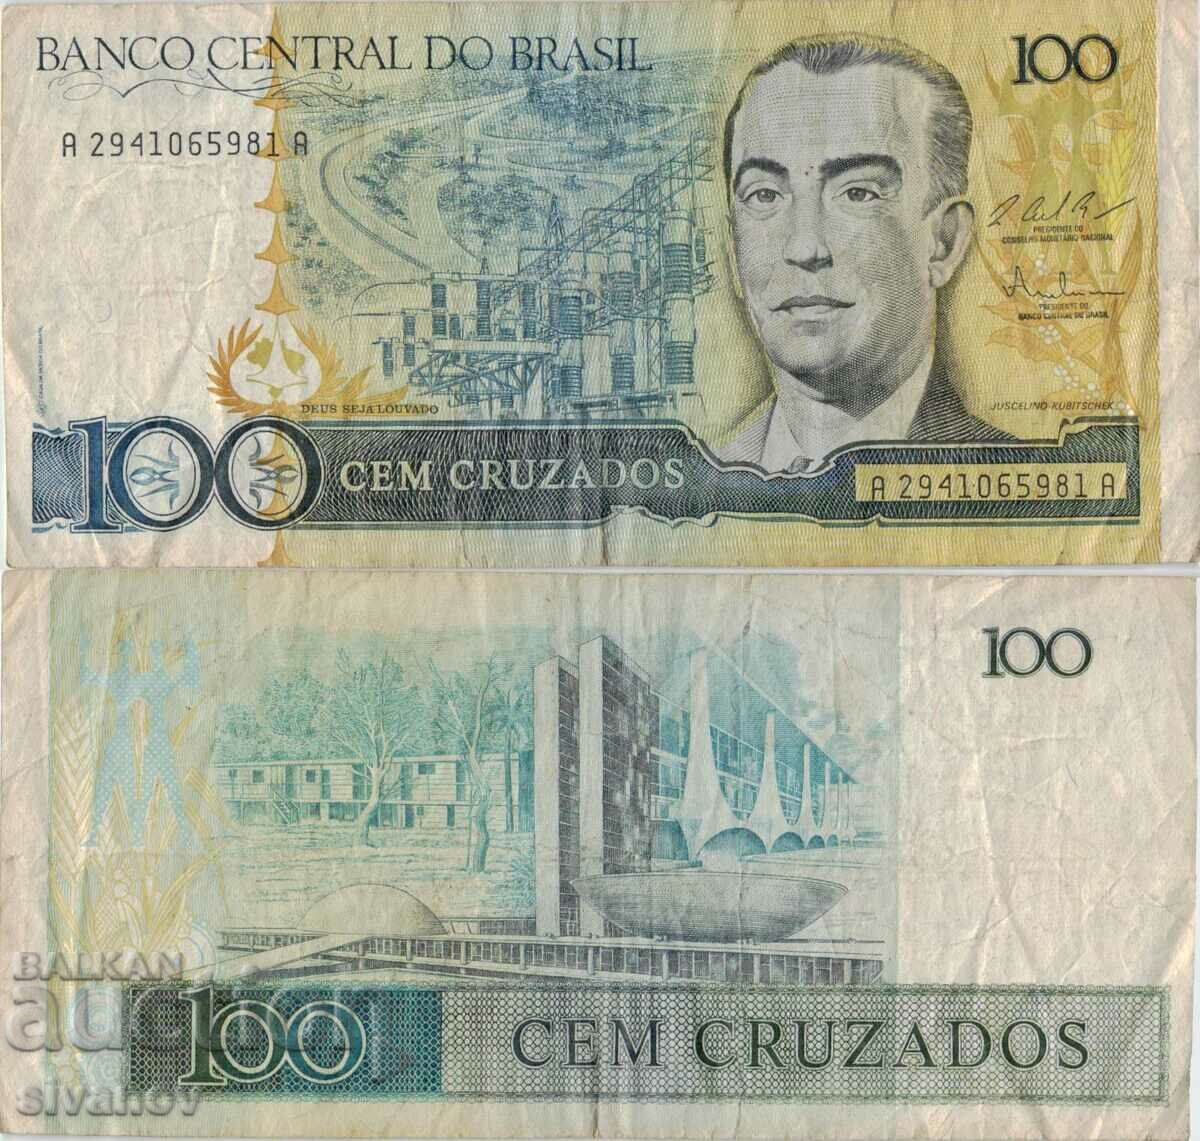 Brazil 100 Cruzado 1987 Banknote #5274